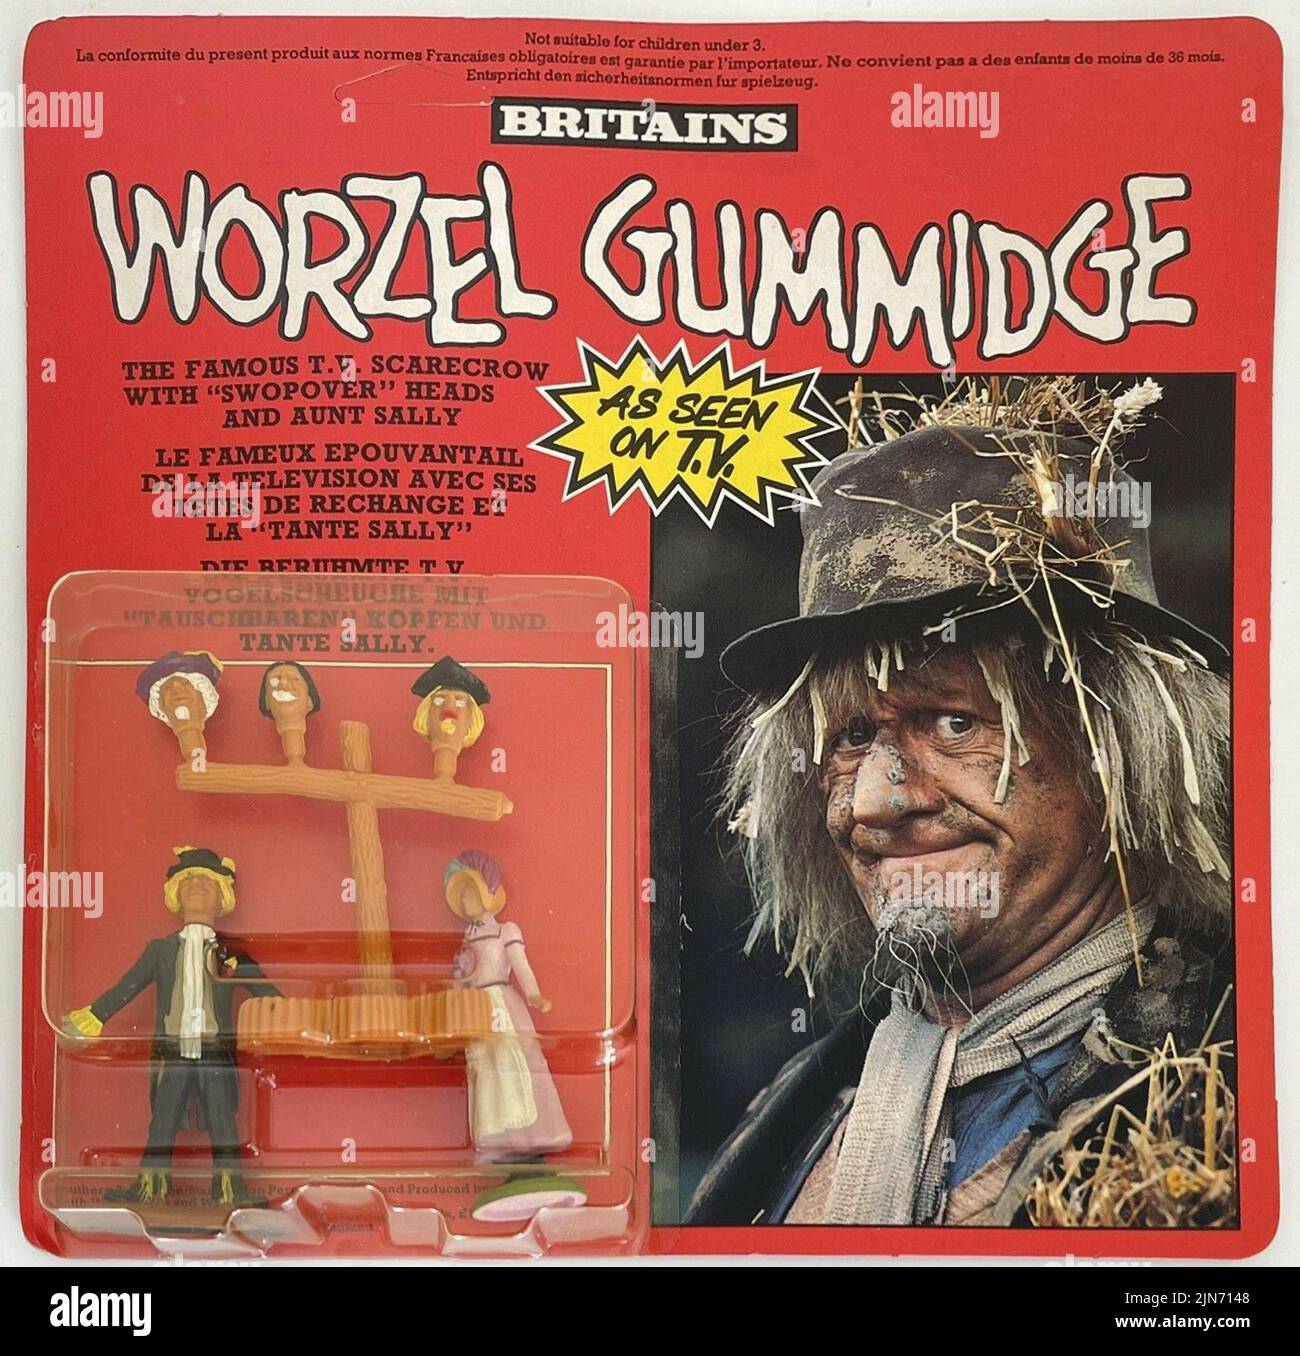 Plastikspielzeug von der berühmten britischen Firma Britains, aus der TV-Show Worzel Gummidge. Zeigt Jon Pertwee auf der Verpackung. Die Figur hat Pertwee und abnehmbare Köpfe. Stockfoto